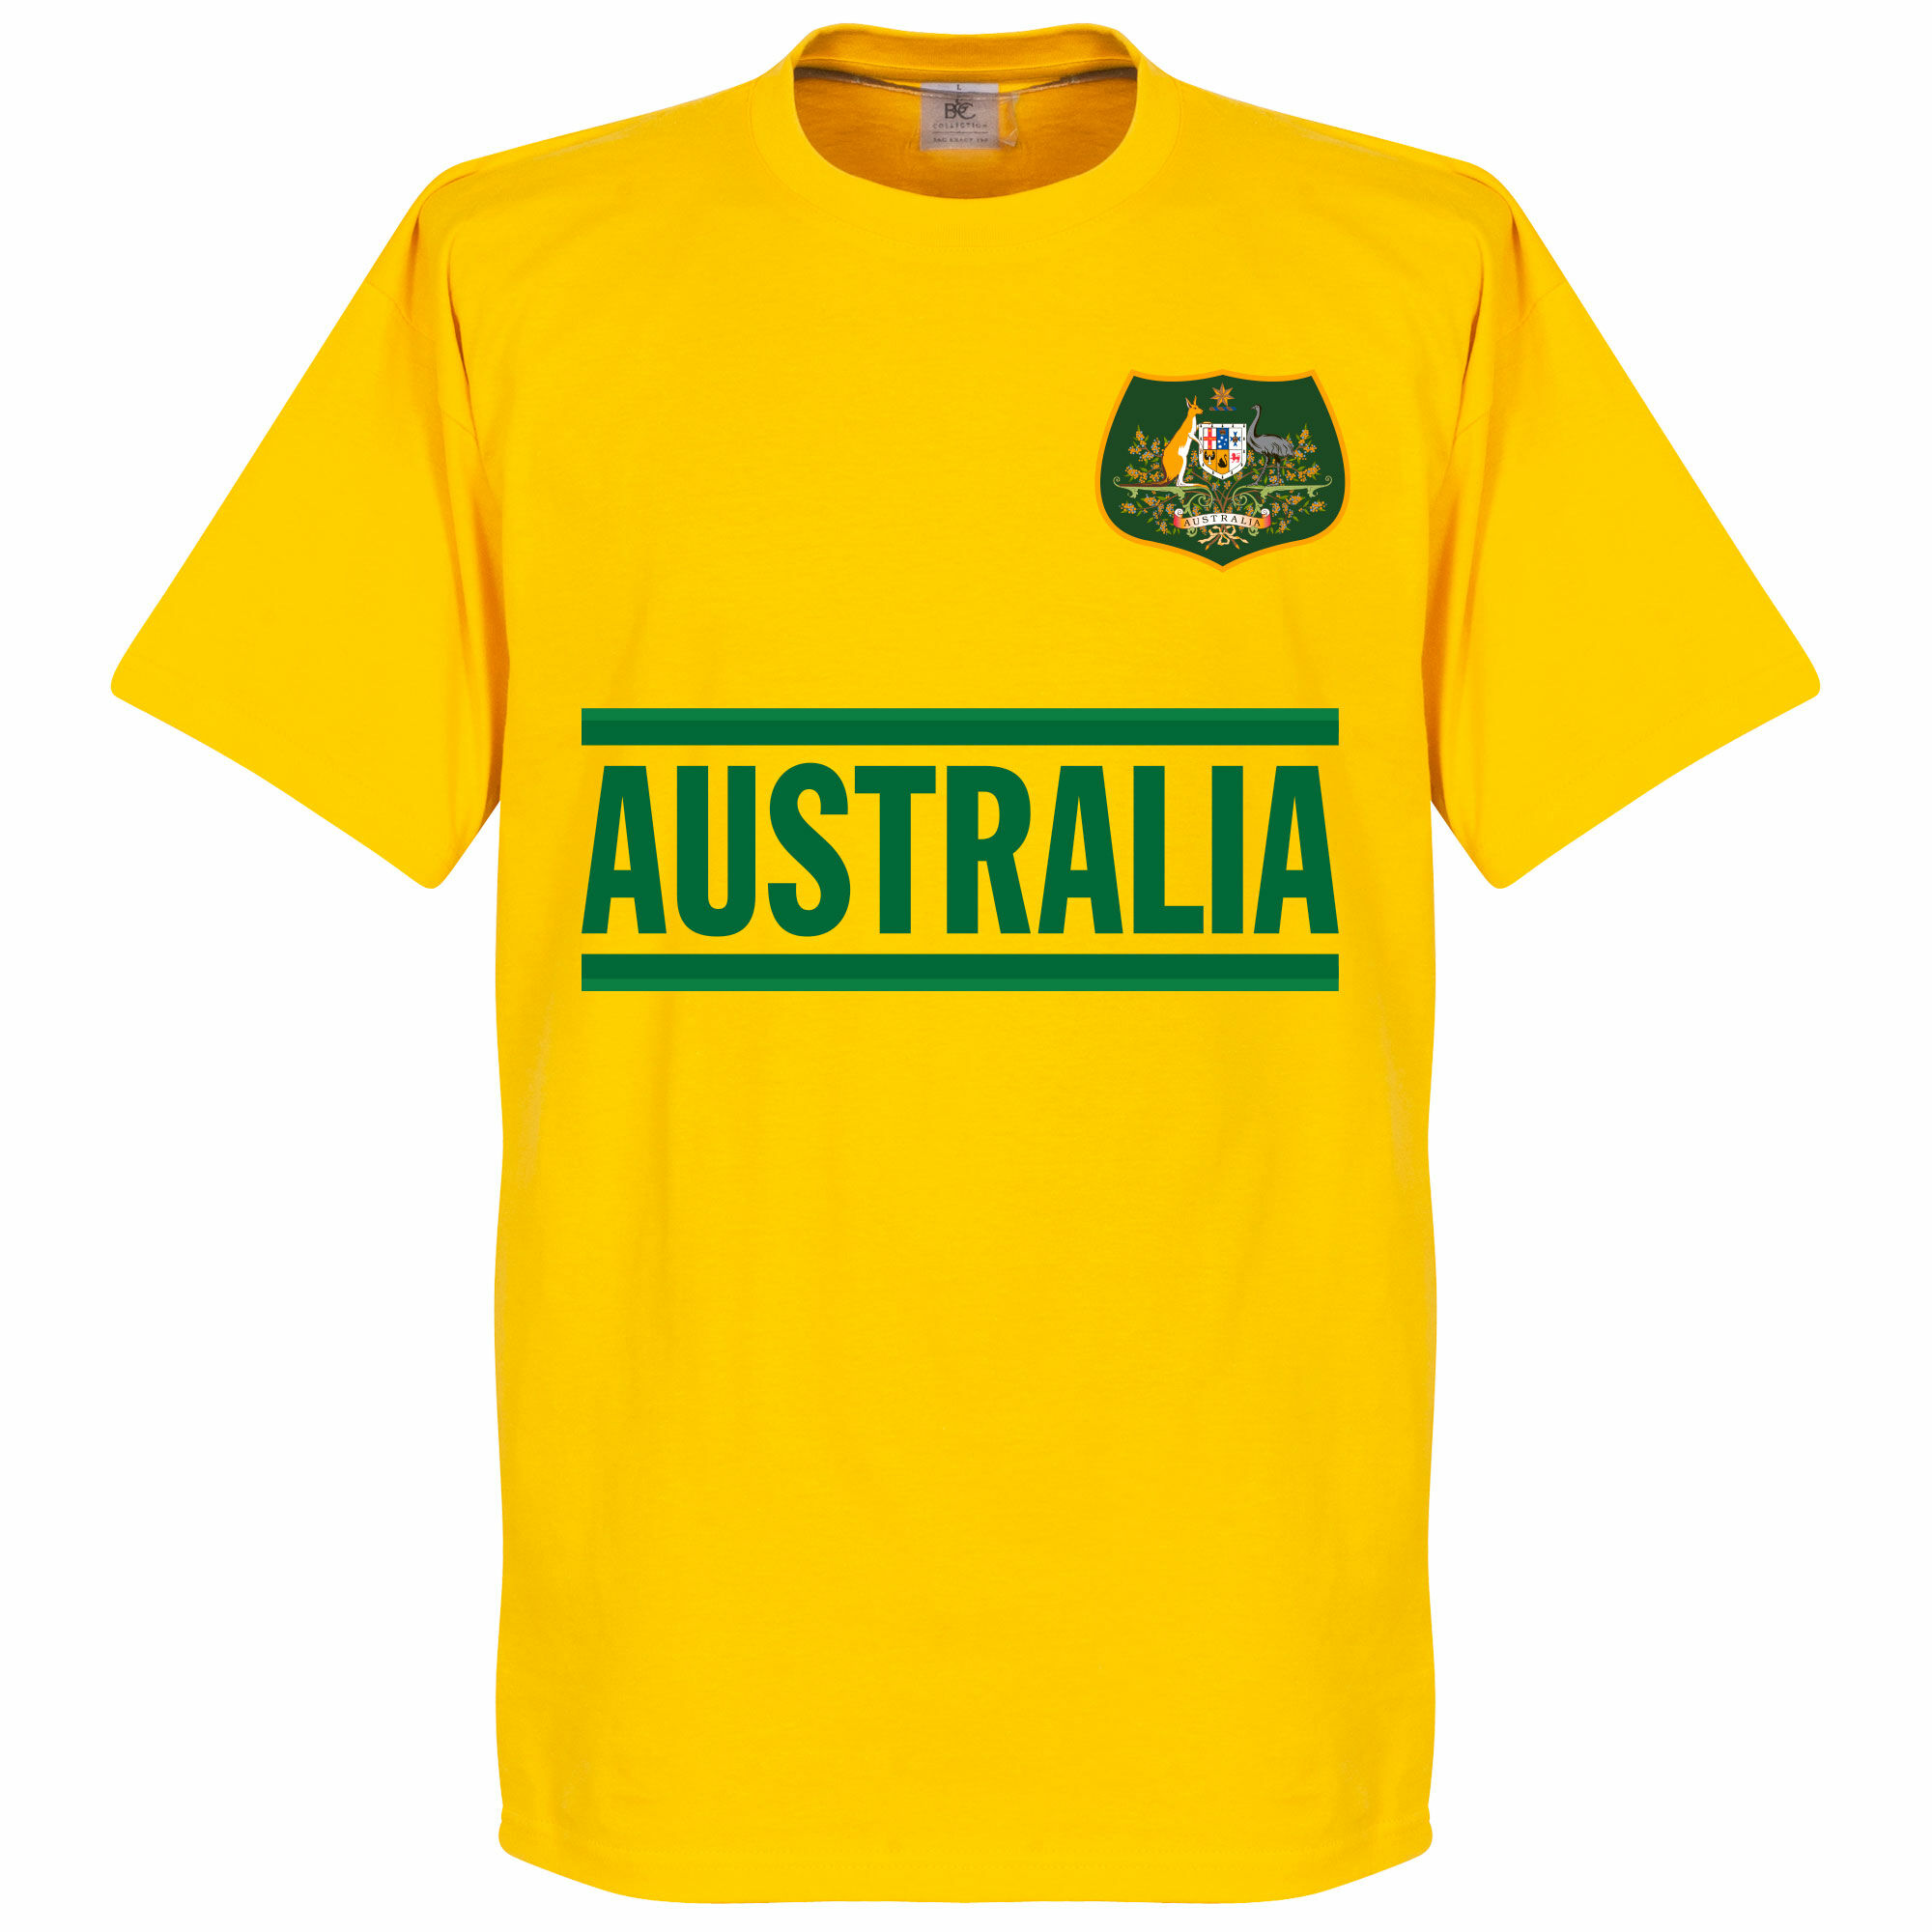 Austrálie - Tričko - žluté